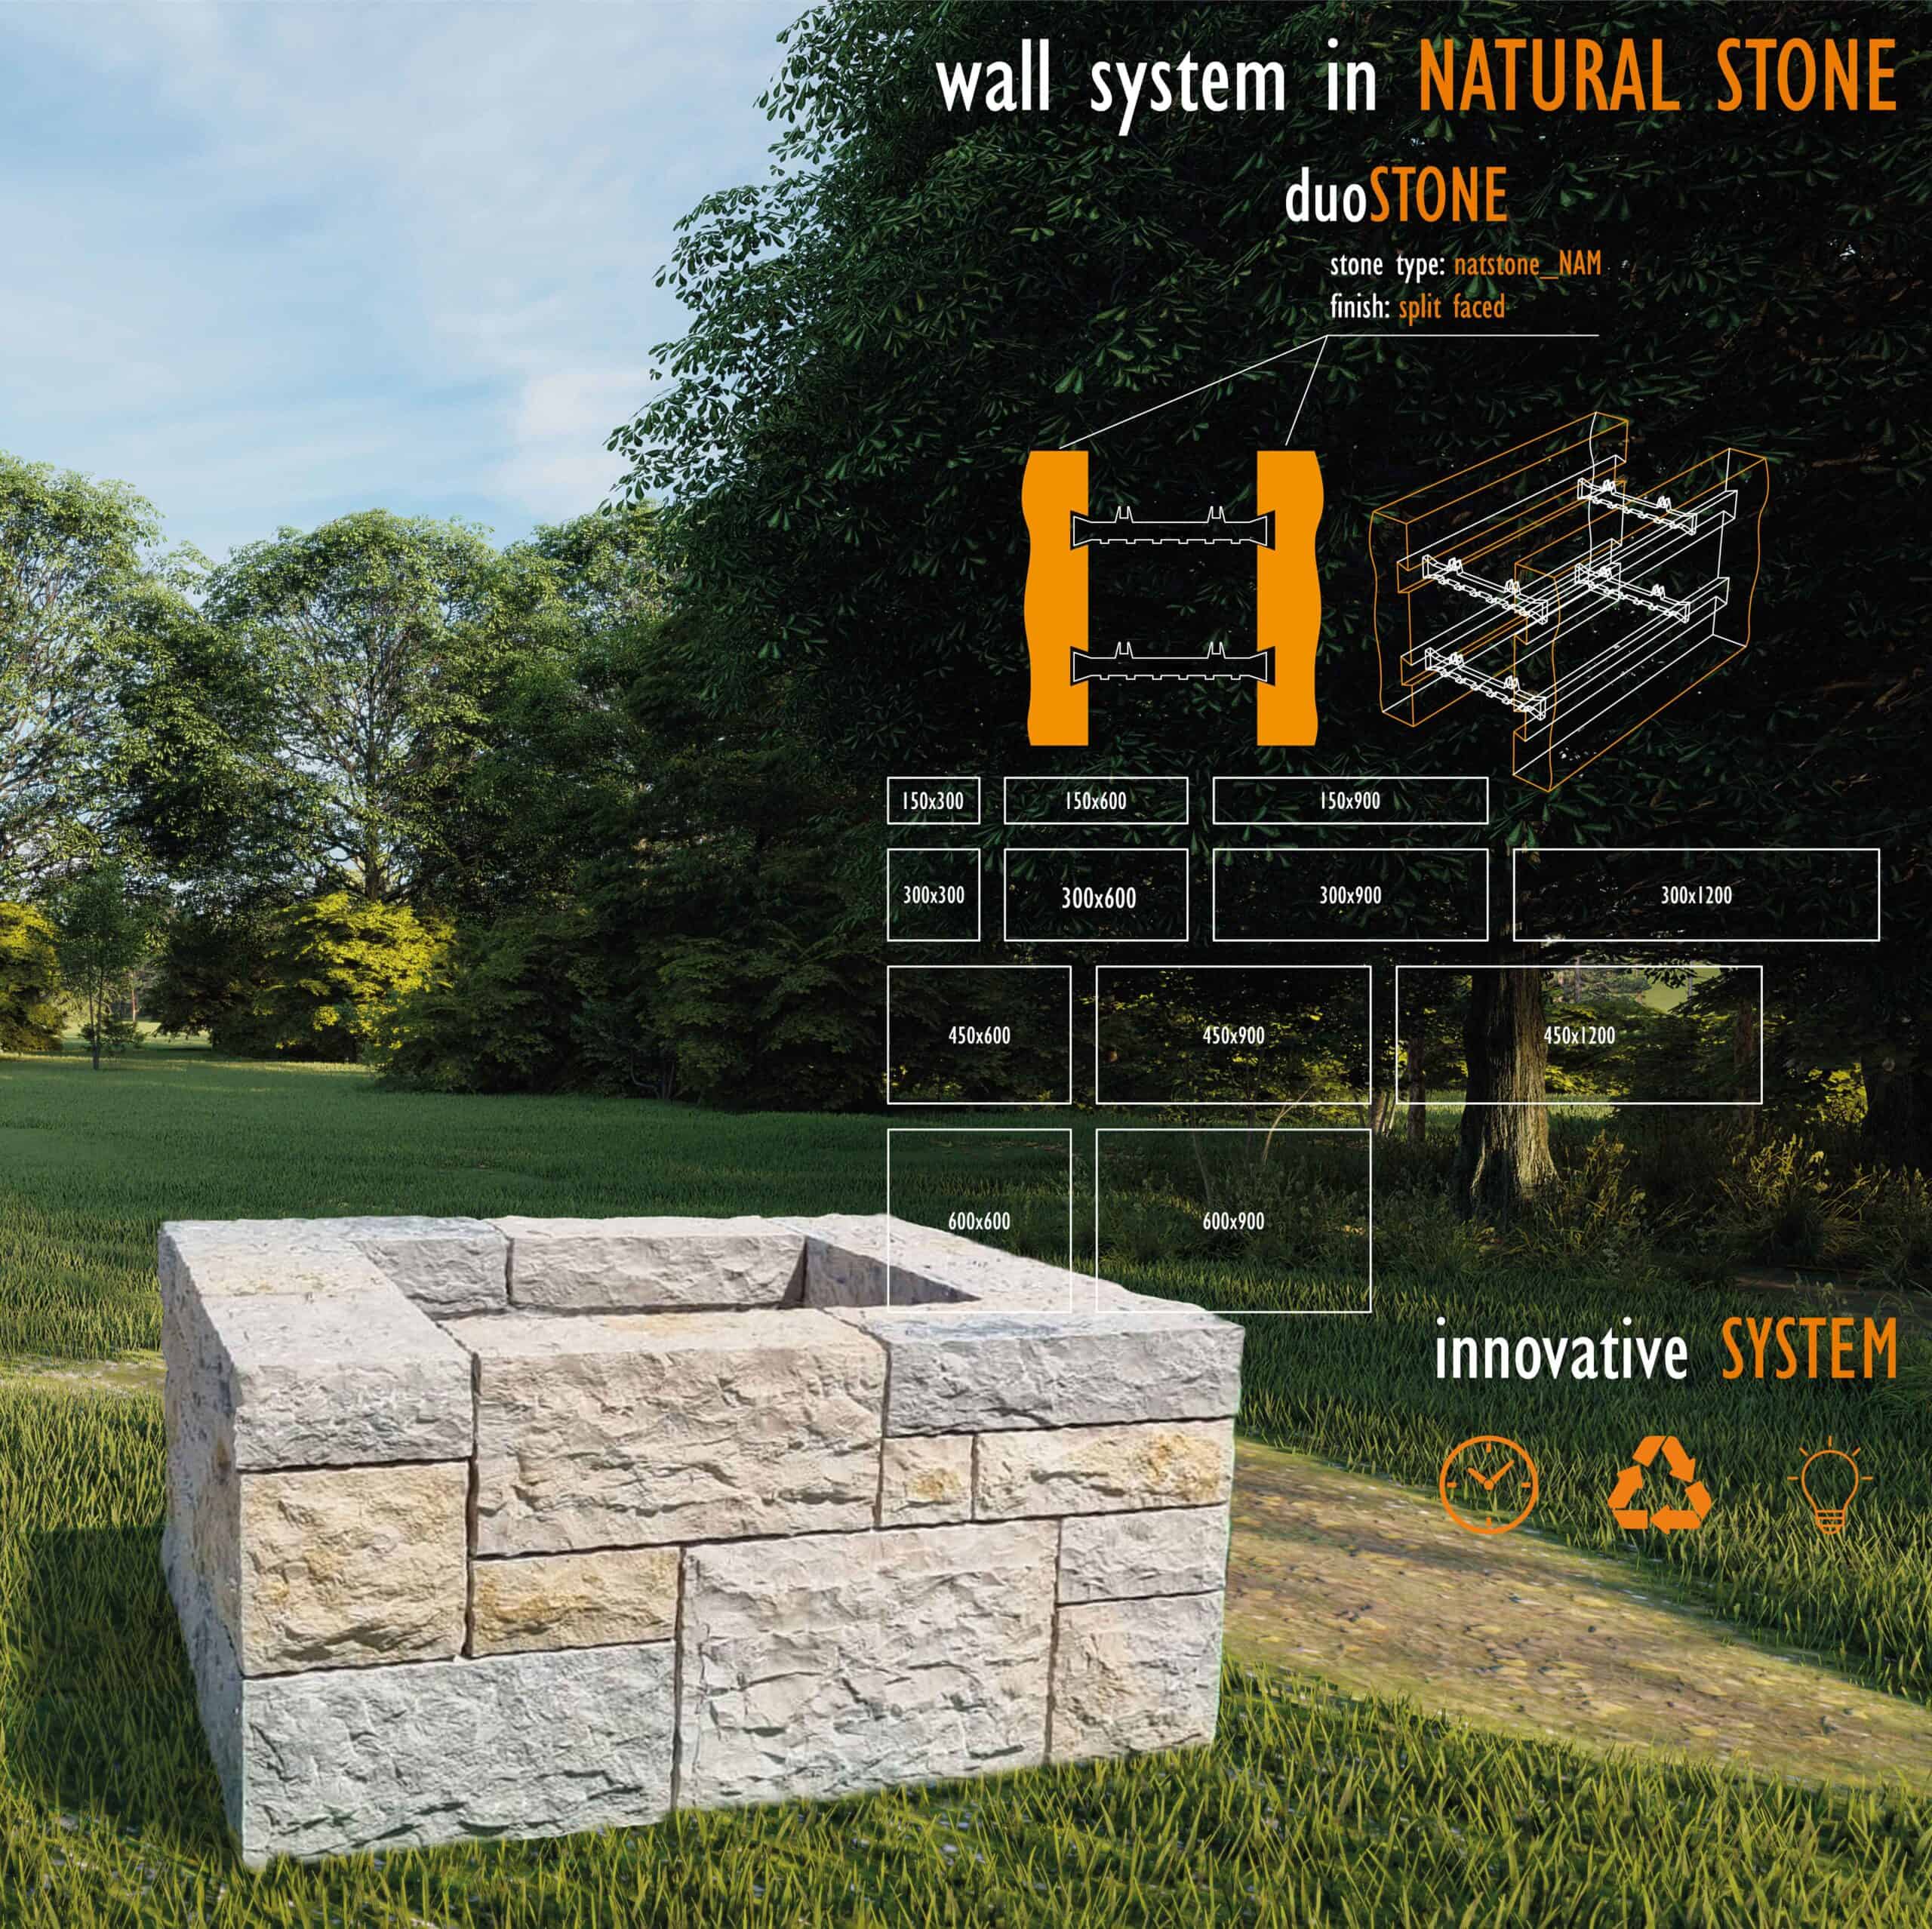 Os Muros em Pedra Natural inspiram-no? - Natstone